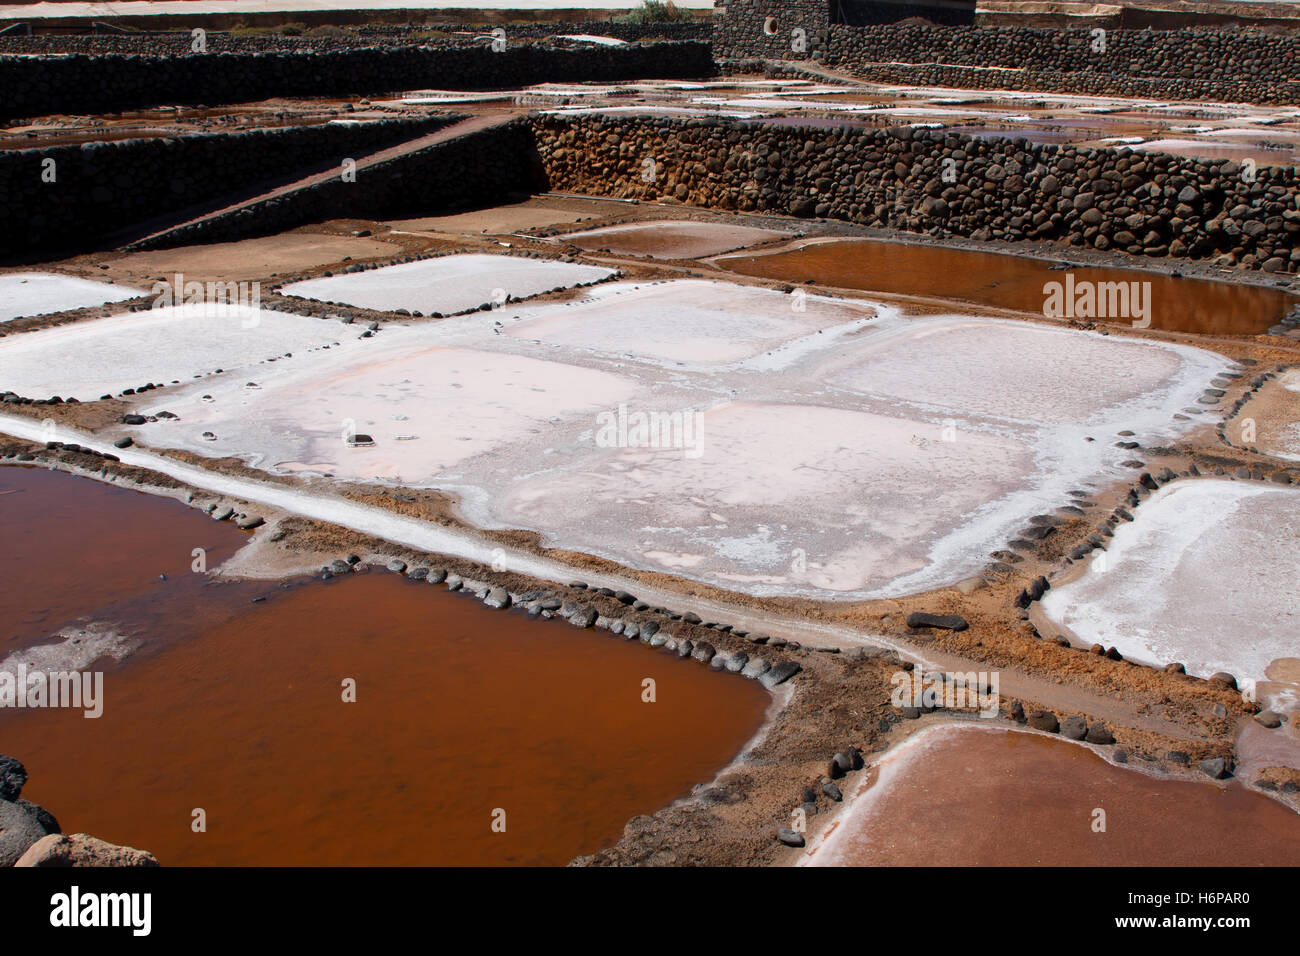 Salt works near Arinaga, Gran Canaria Stock Photo